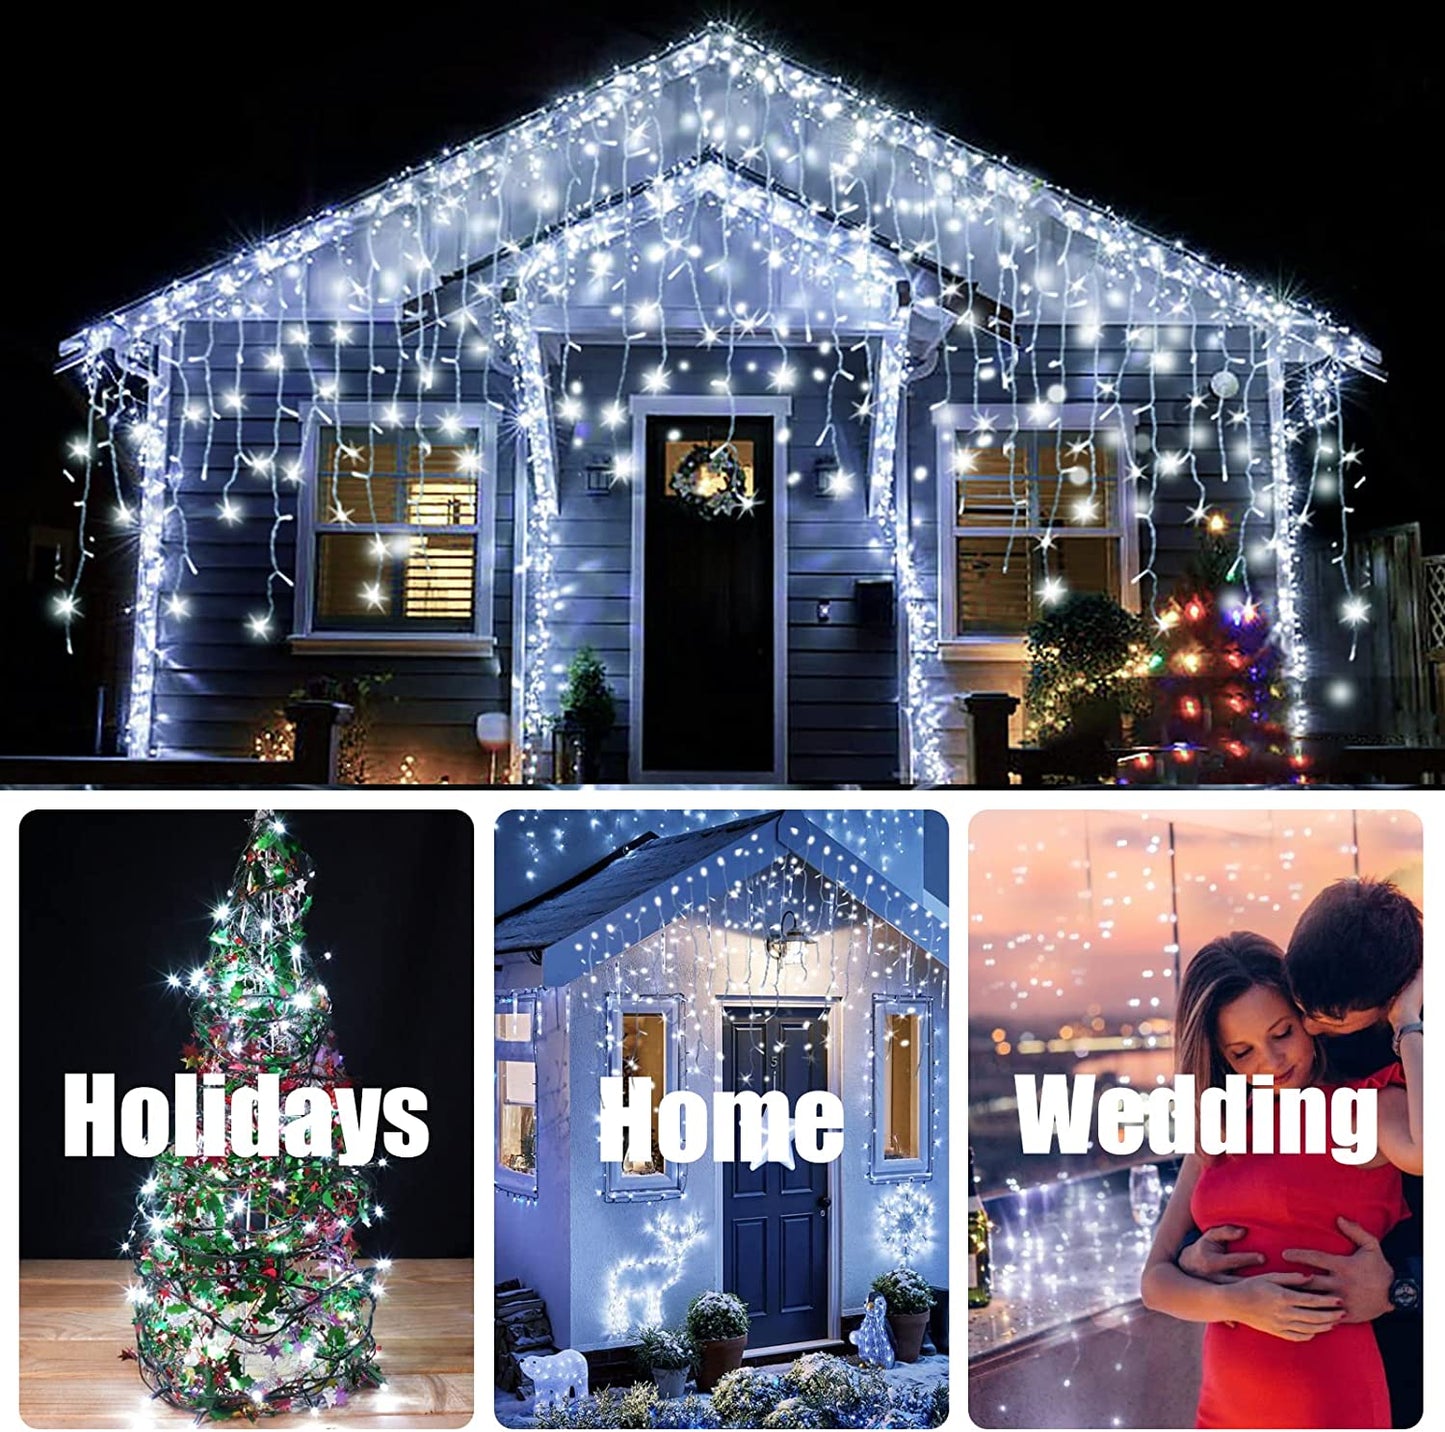 GESCO Catena luminosa interno / esterno 18,75 m, luci led con 8 funzioni, 450 led colore bianco, luci led decorative Natale, illuminazione casa, ghirlanda luce